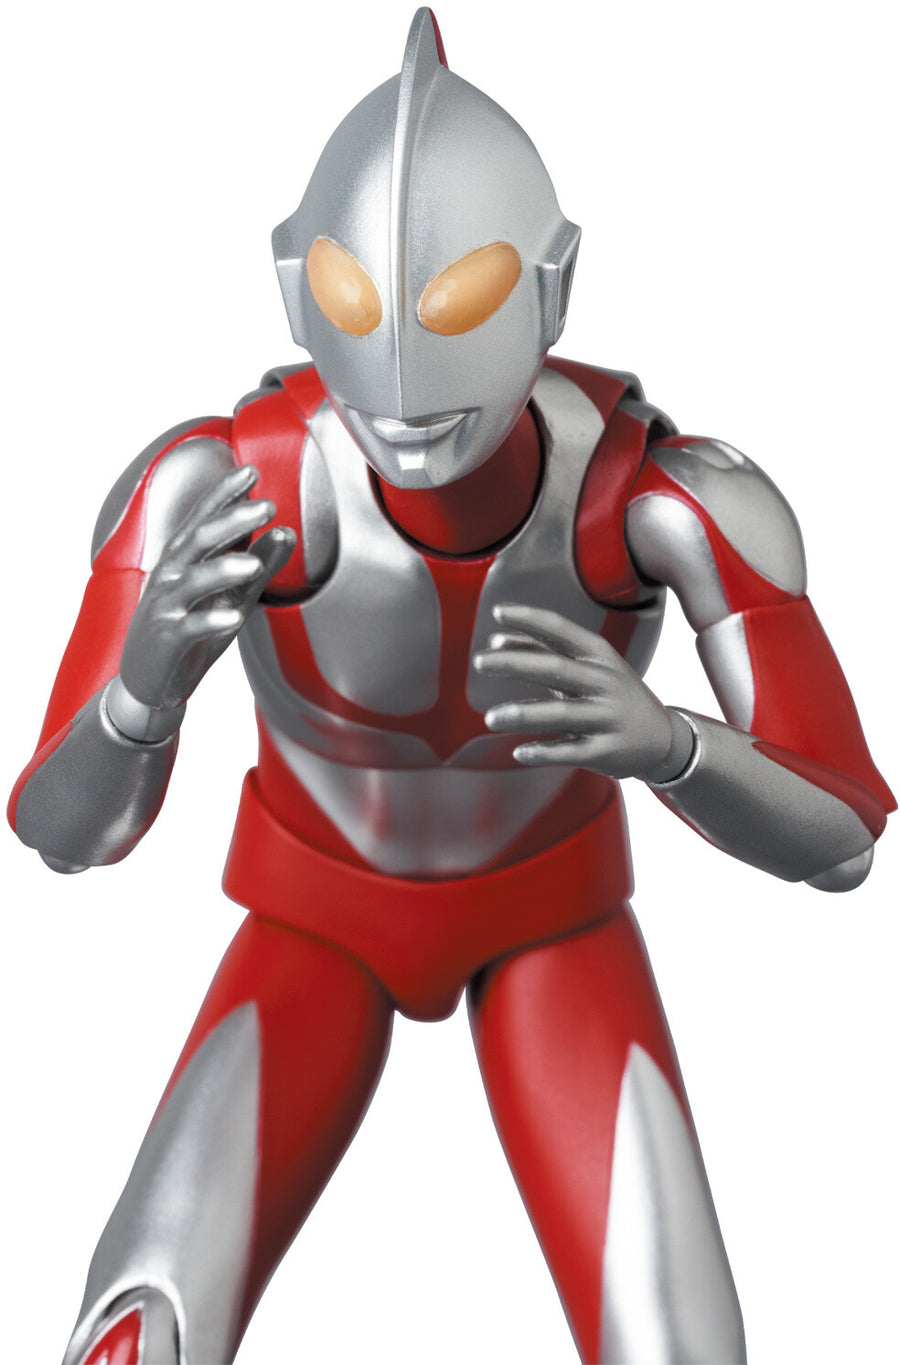 Imitation Ultraman, Ultraman - Shin Ultraman